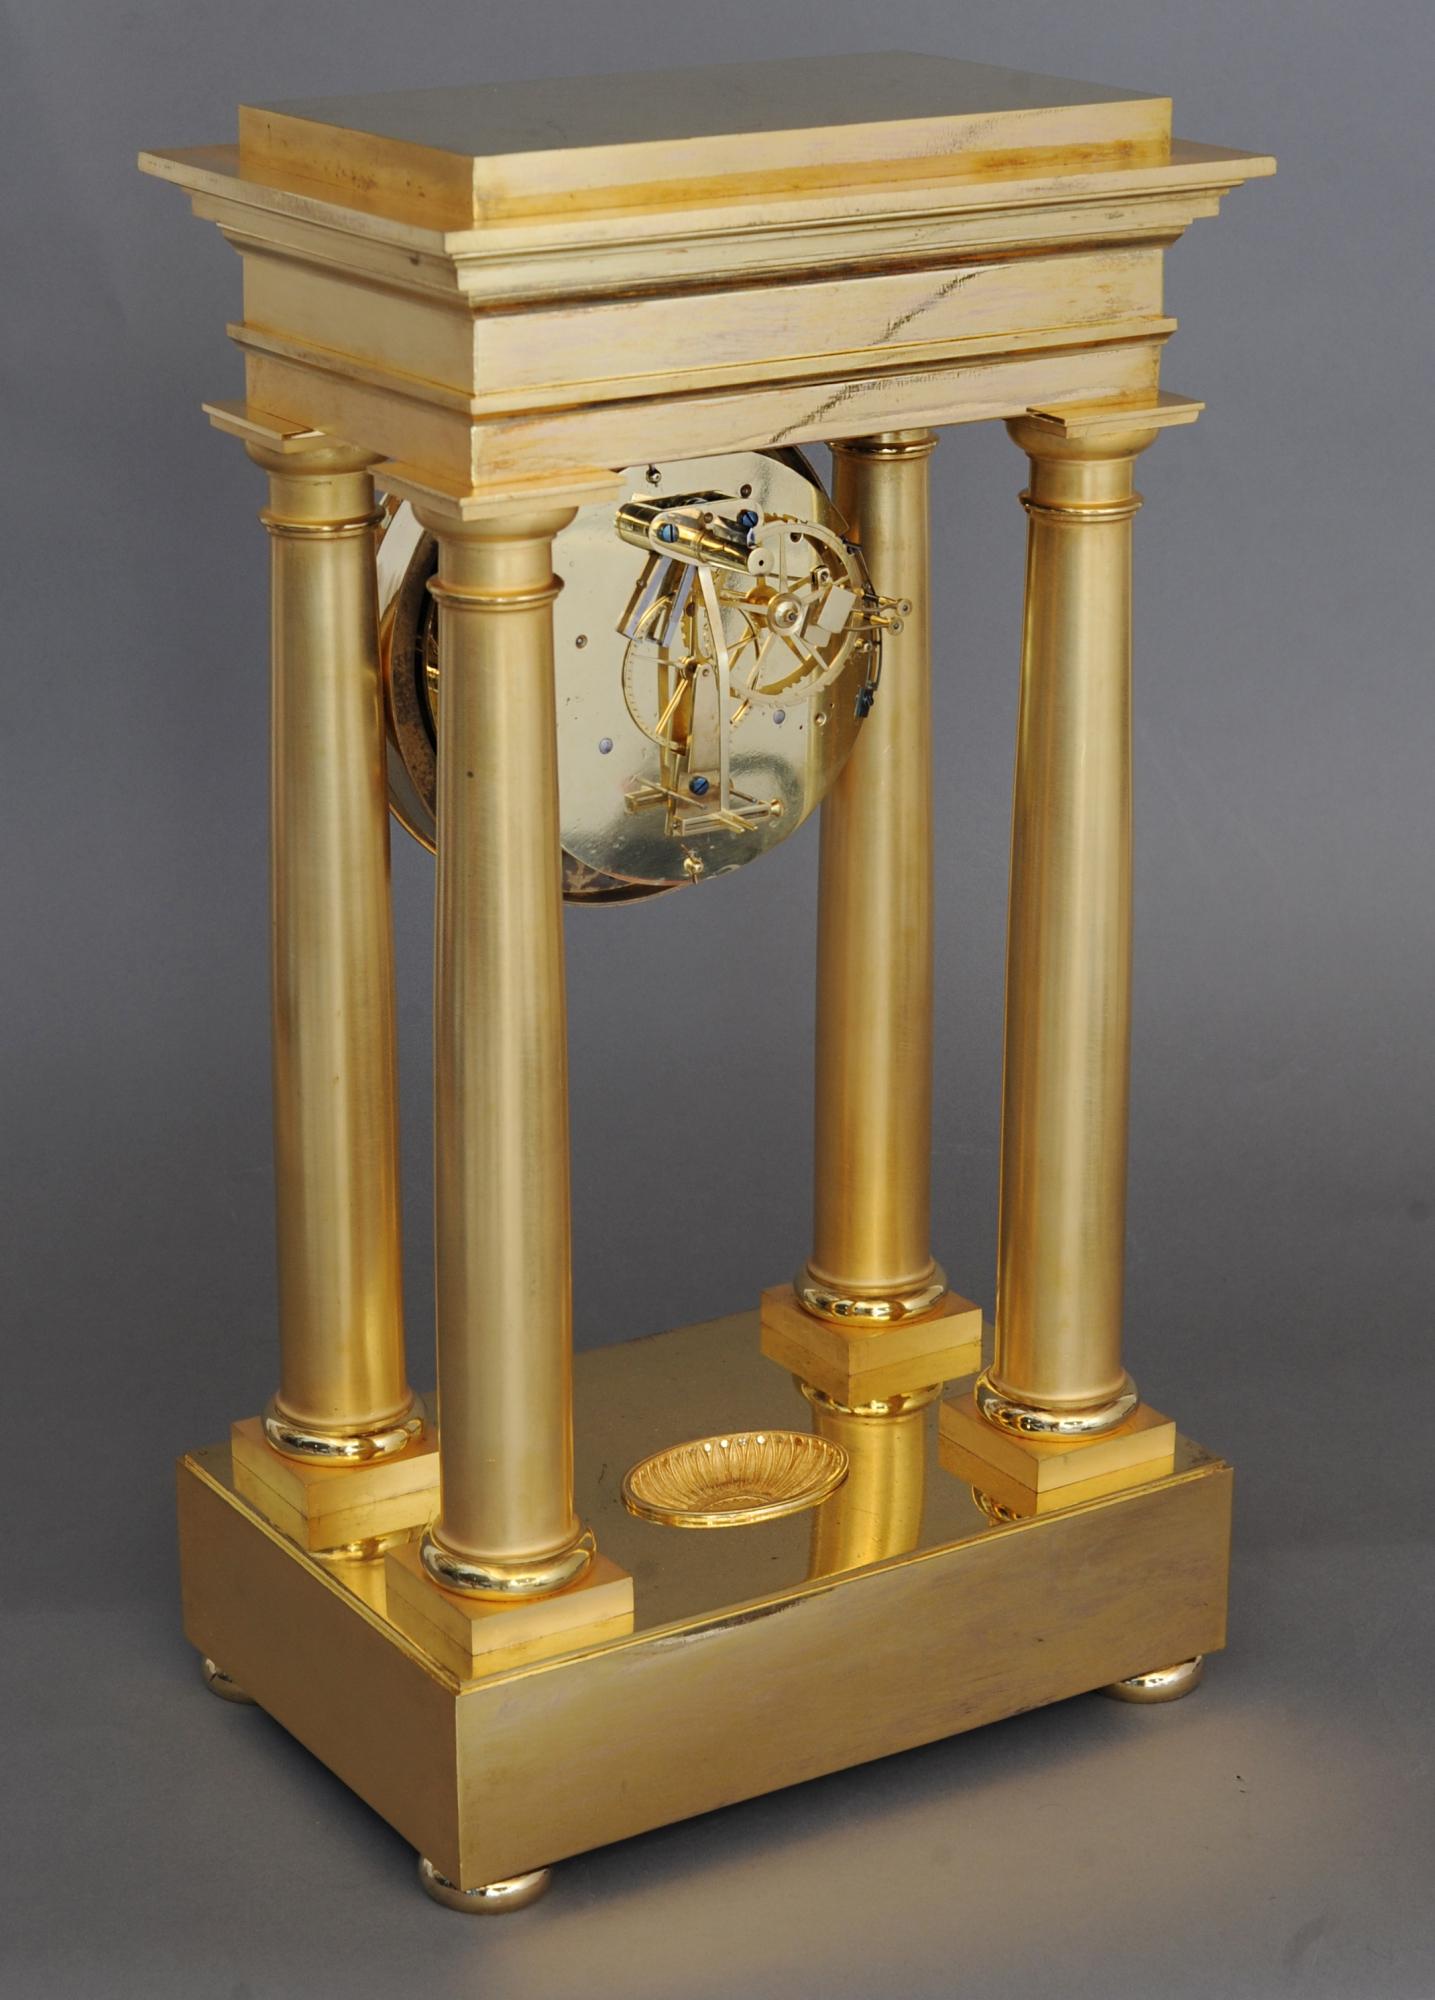 Eine extrem hohe Qualität frühen Empire vier Säulen Tisch Präzision Regulator Kamin Uhr. Diese hochwertige Uhr stammt von dem berühmten Uhrmacher Dieudonné Kinable aus der Zeit um 1800. Viertelstundenschlag auf 2 Glocken Messerschneide Aufhängung